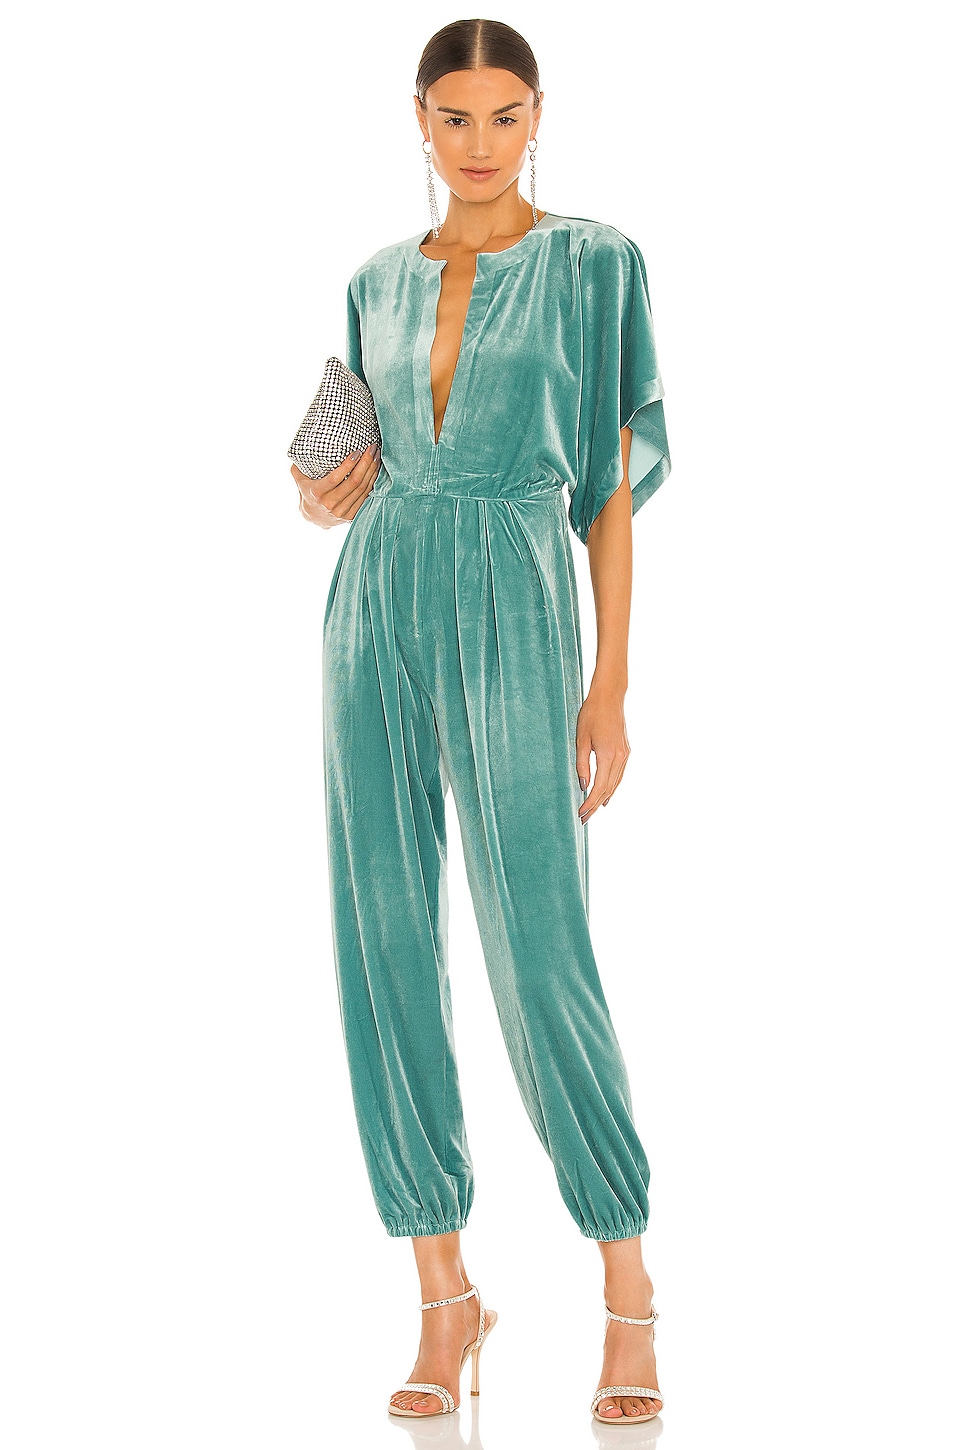 Green Designer Velvet Jumpsuit for Evening with Elastic Waist